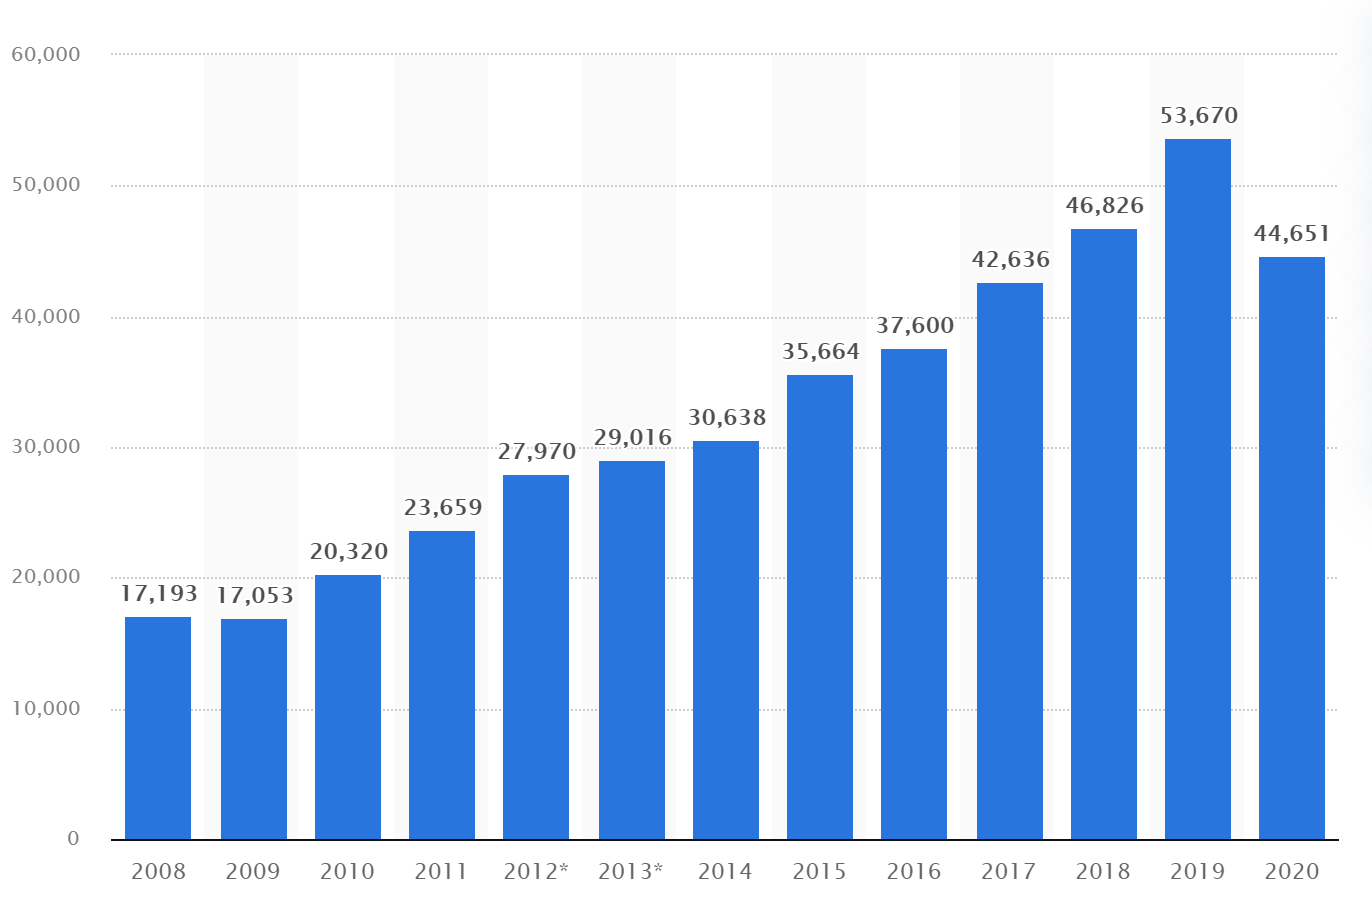 Doanh thu toàn cầu của LVMH tính từ năm 2008 đến năm 2020 (đơn vị: triệu Euro). Ảnh: Statista.